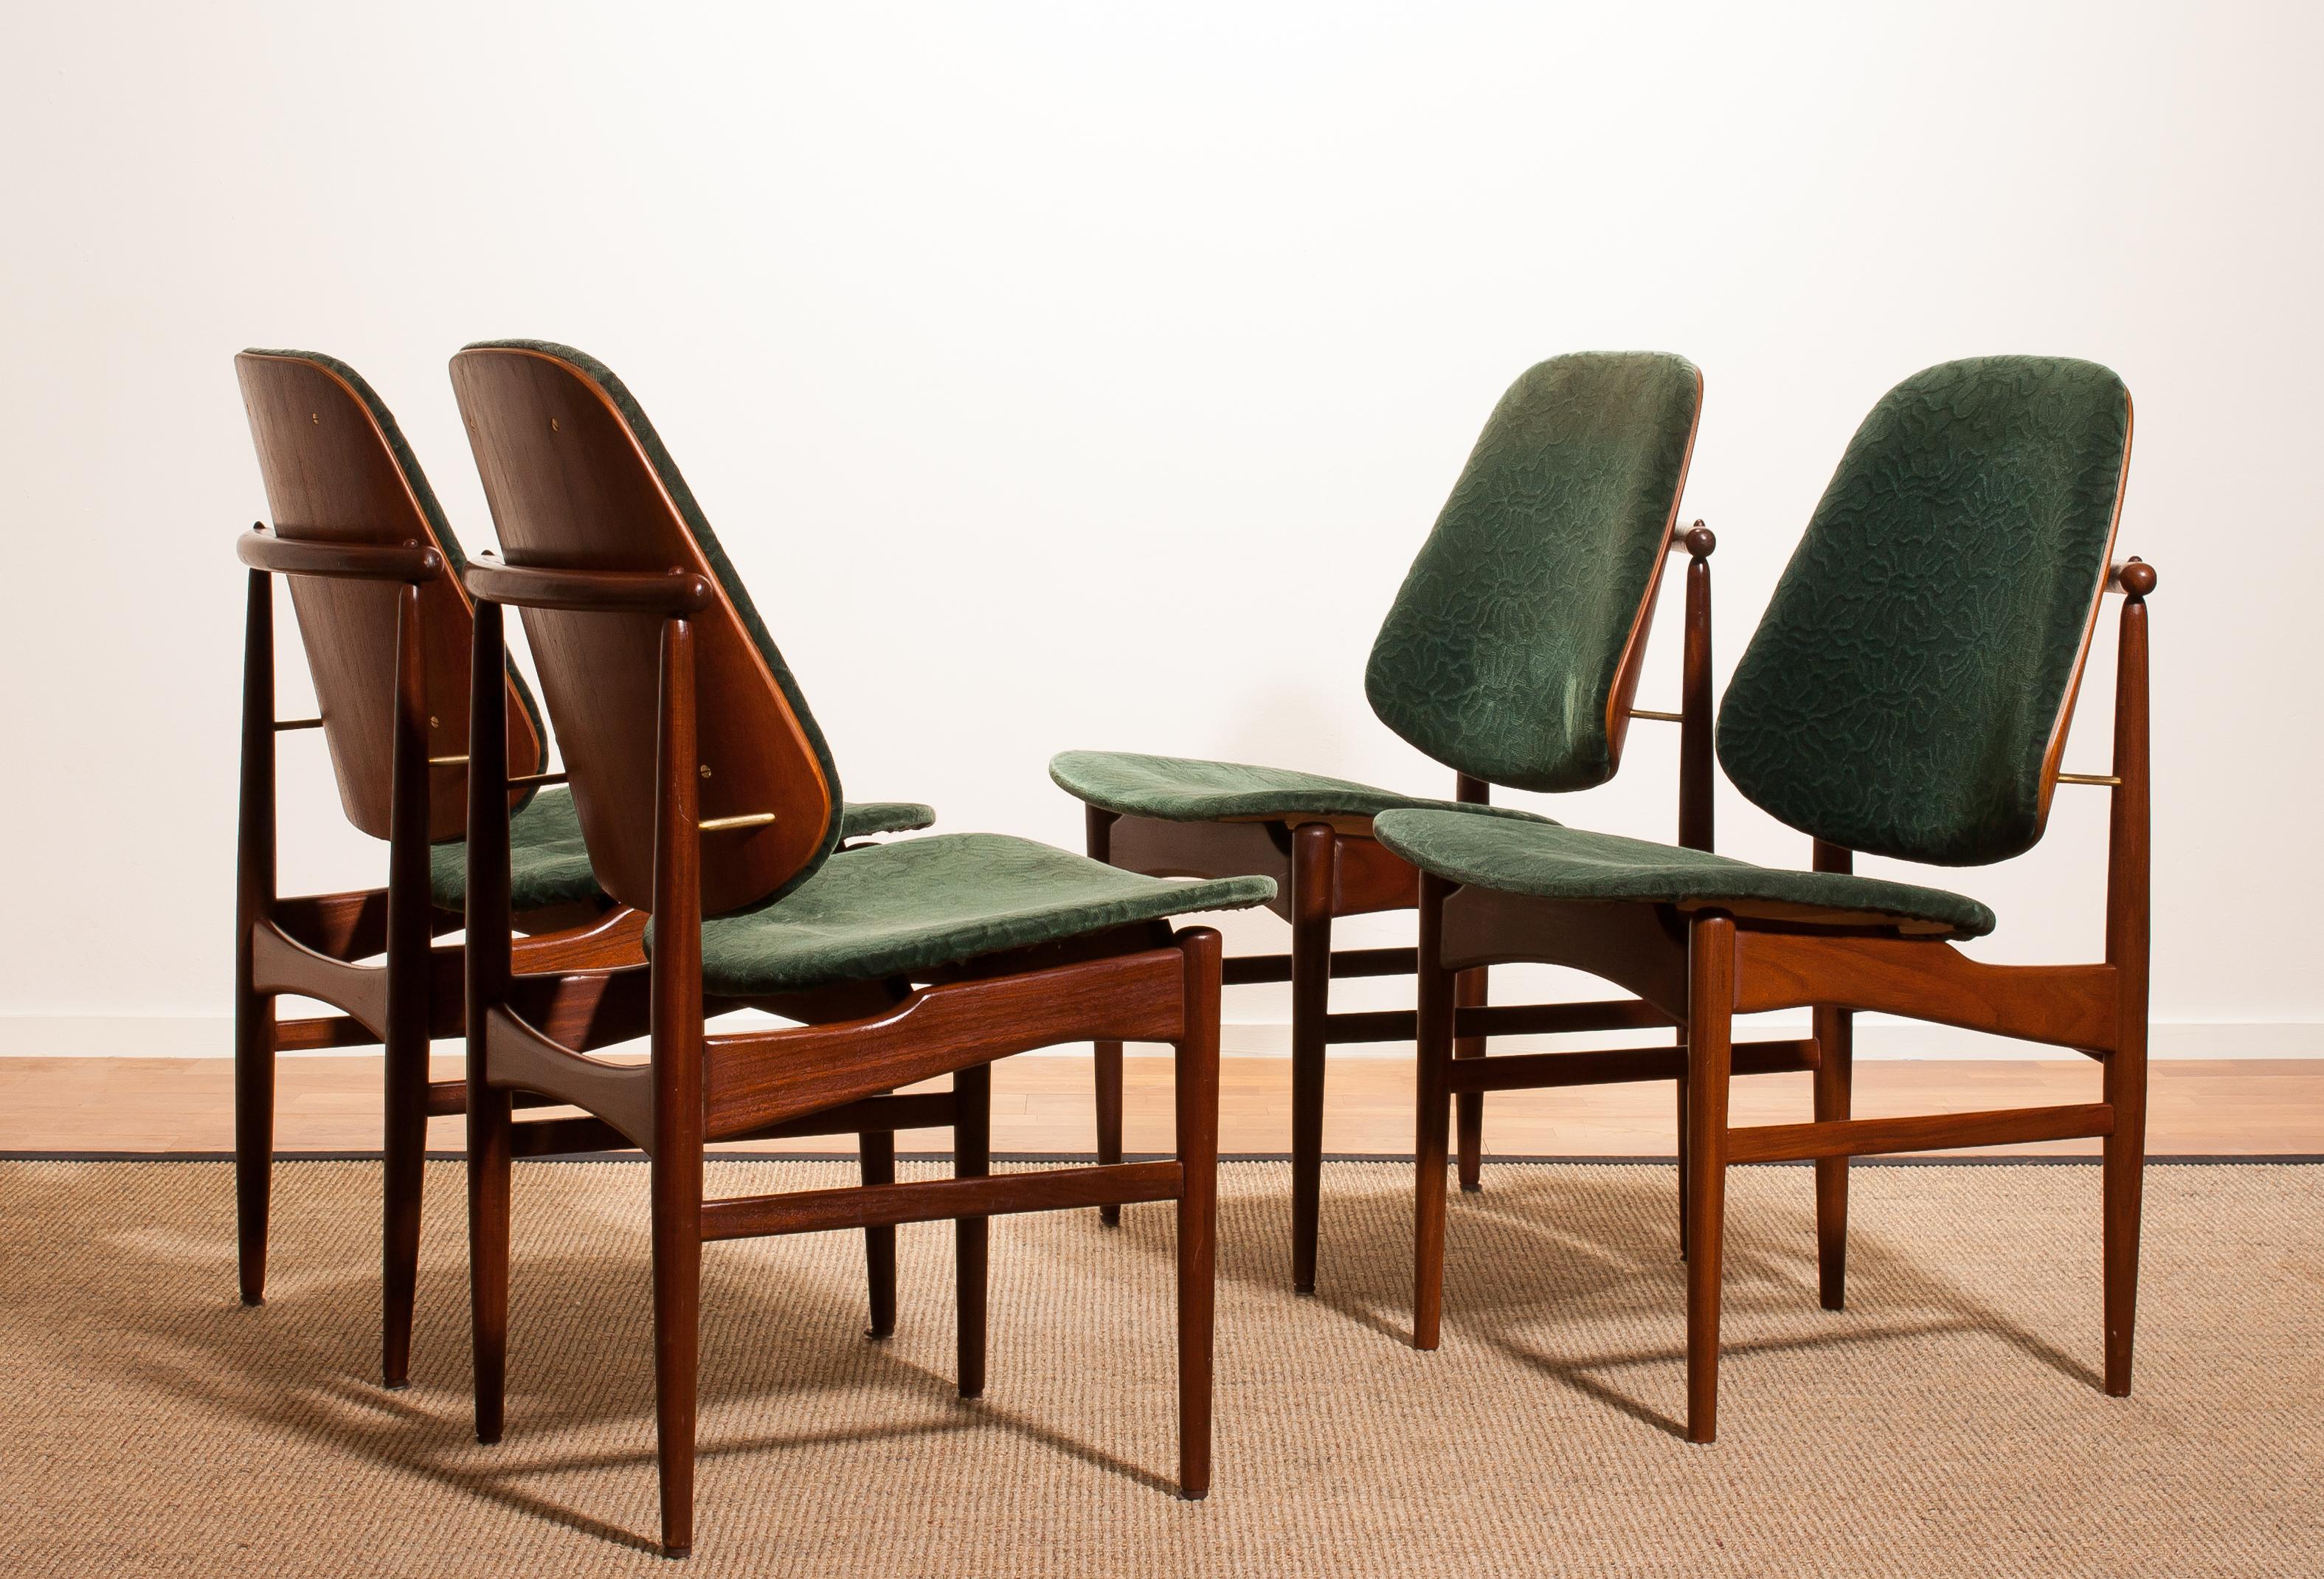 Danish 1950s, Set of Four Teak Dining Chairs by Arne Vodder for France & Daverkosen